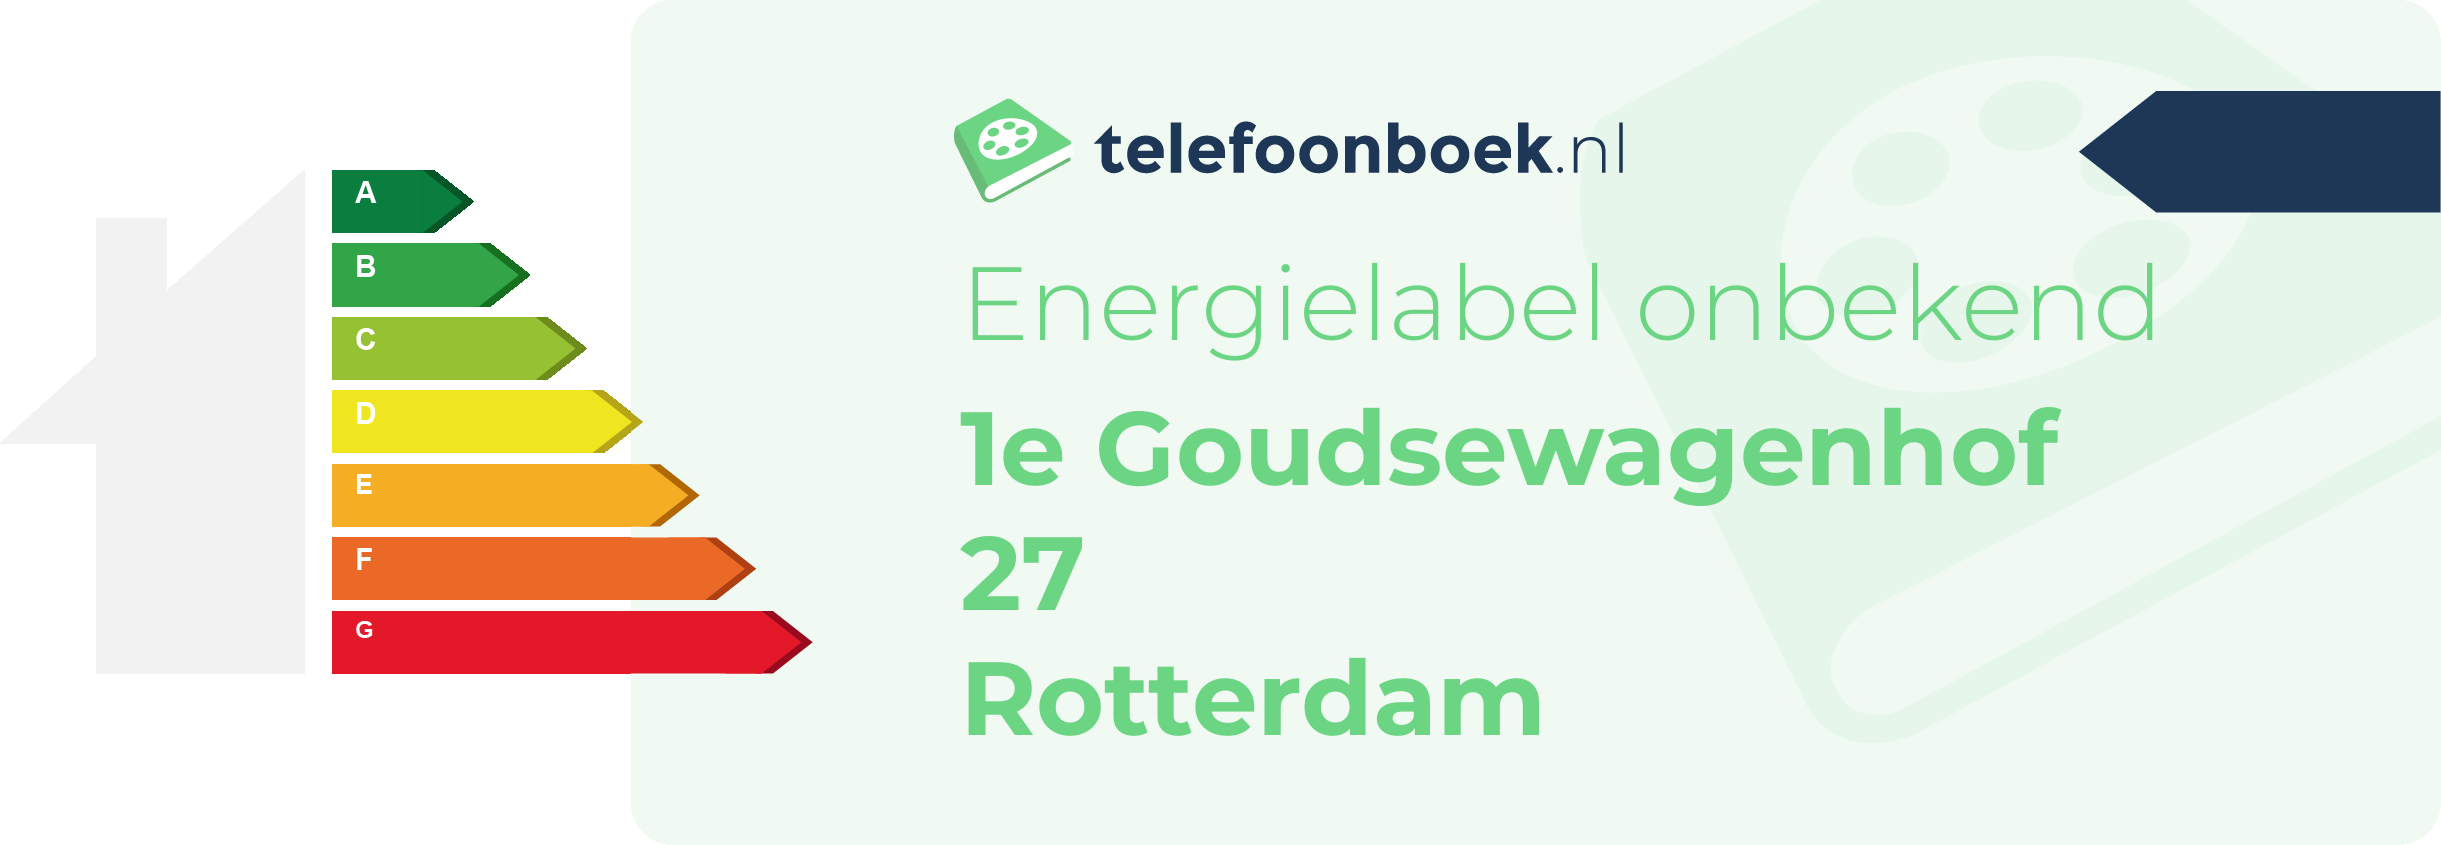 Energielabel 1e Goudsewagenhof 27 Rotterdam